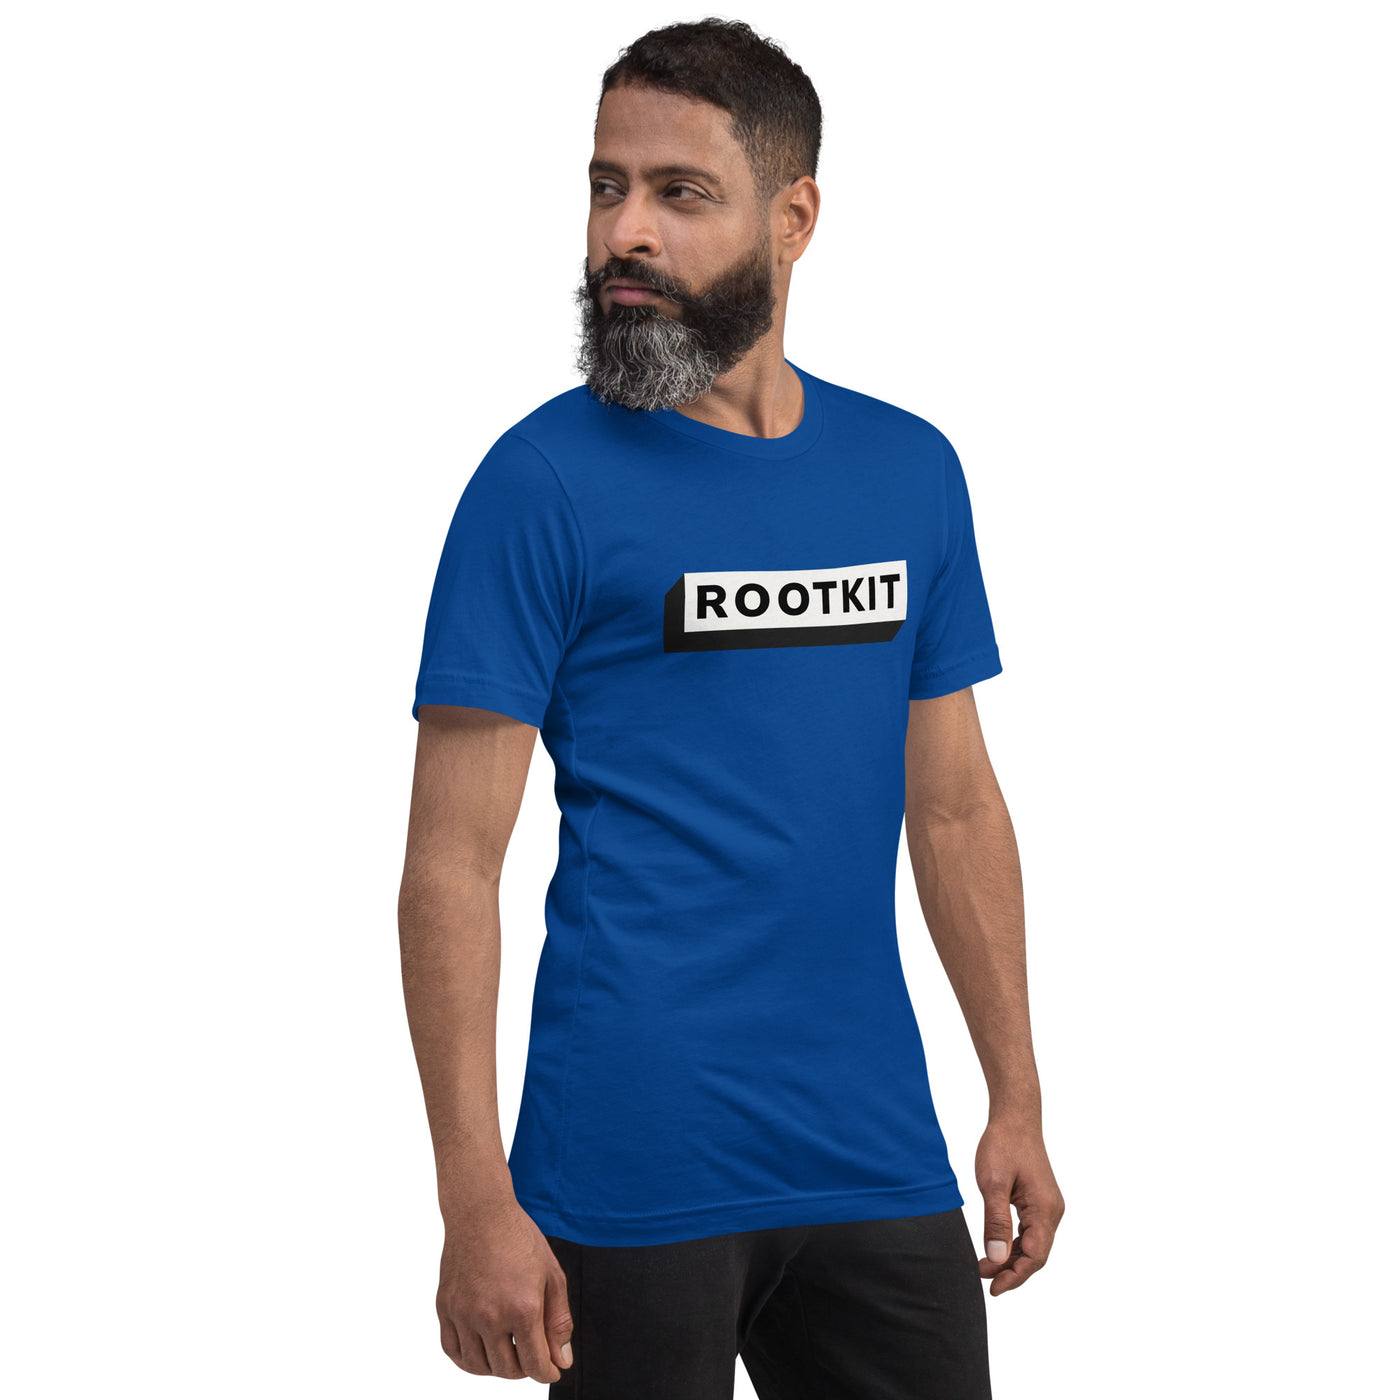 Rootkit - Unisex t-shirt